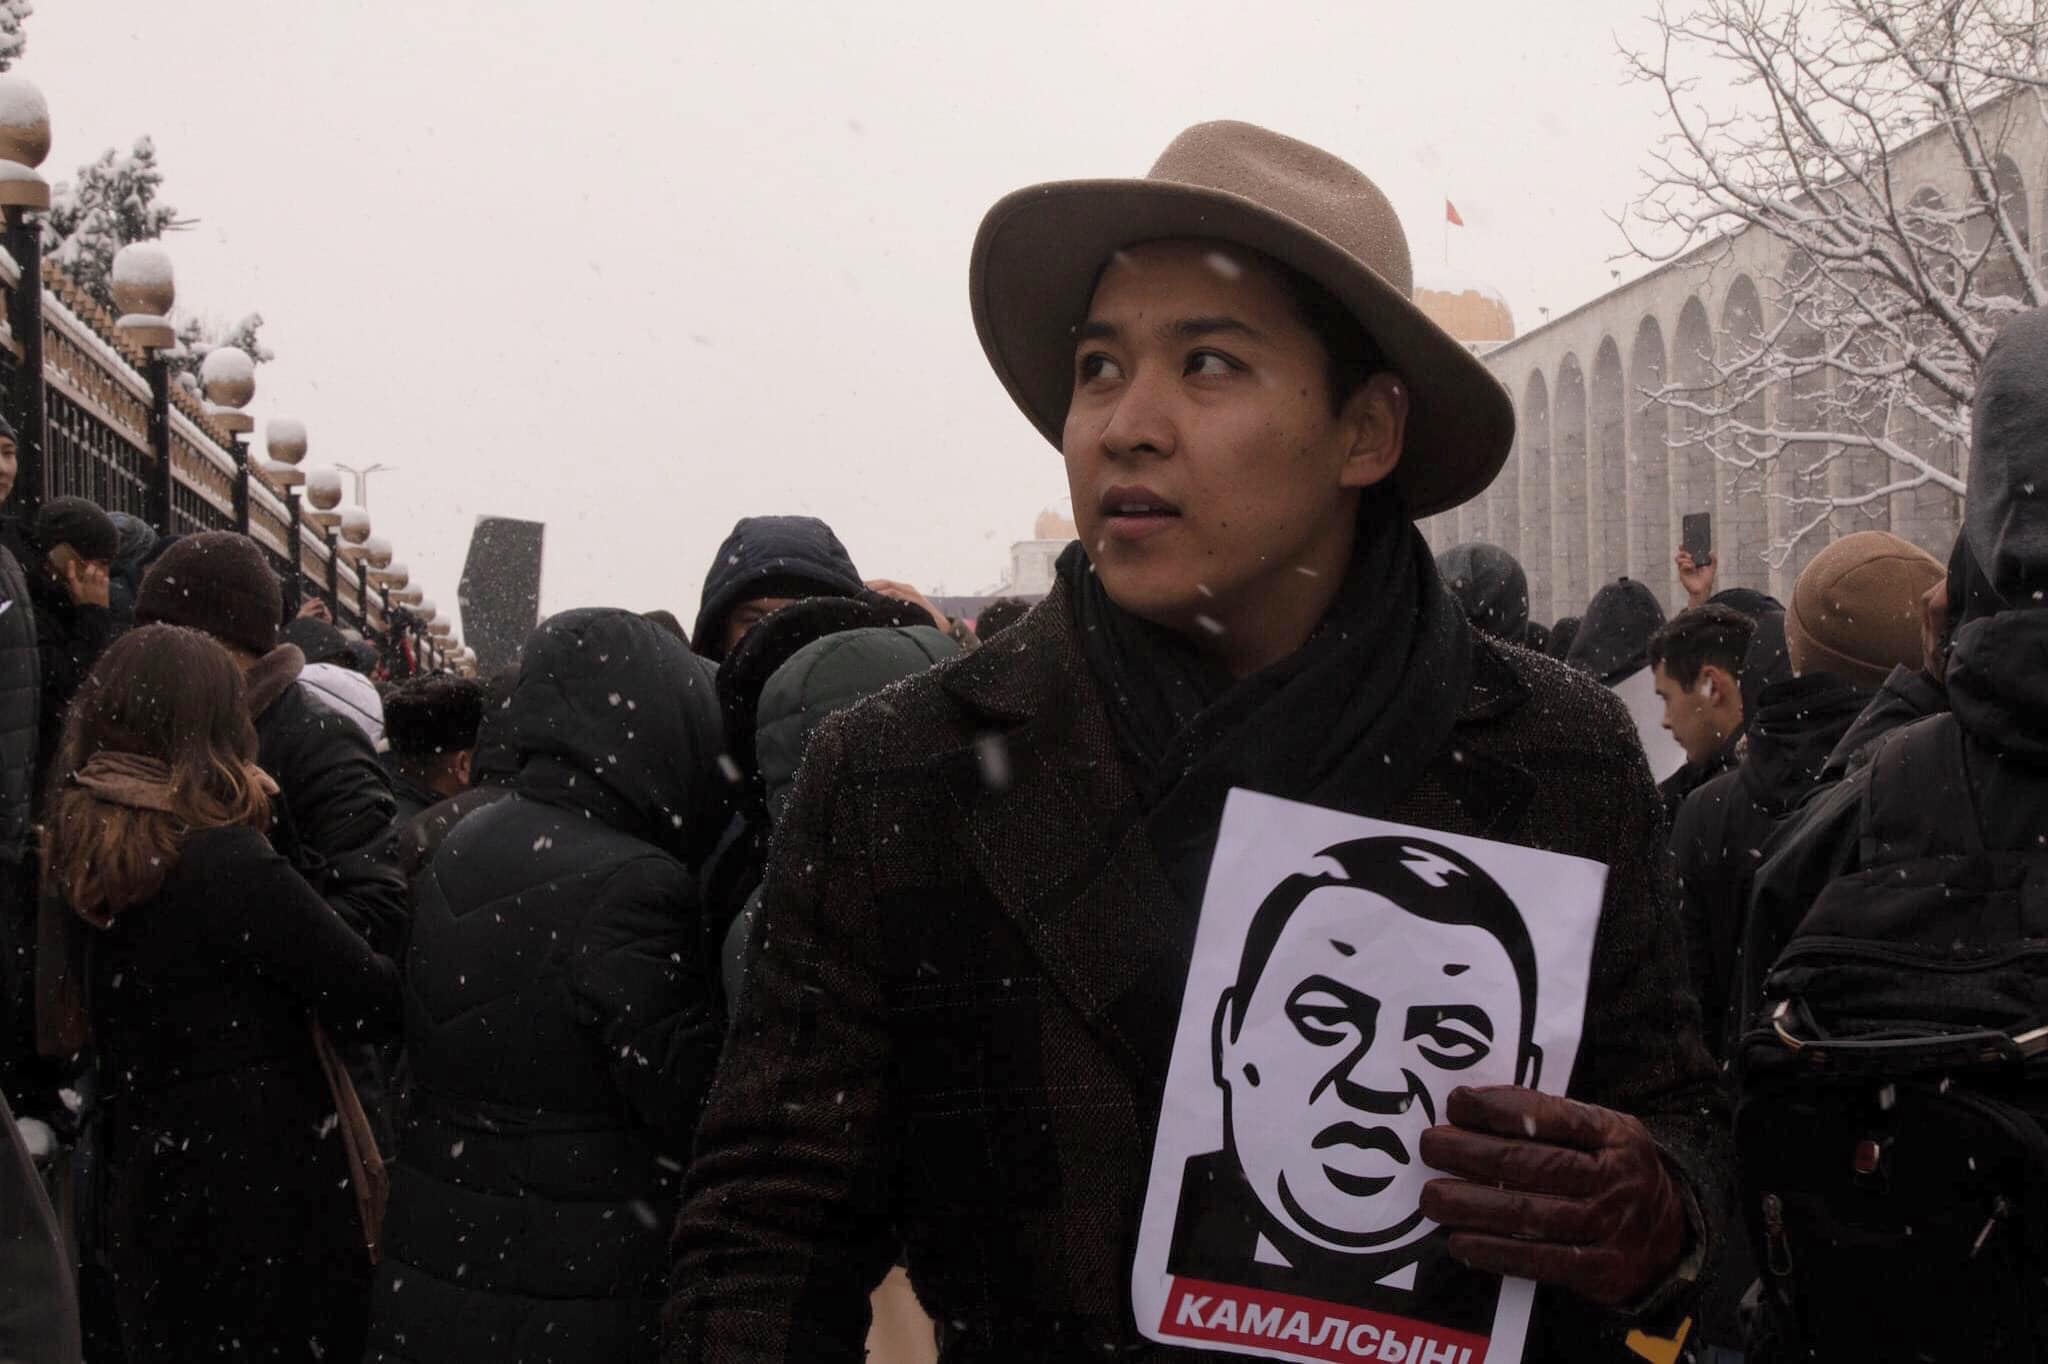 В Бишкеке задержали, а затем отпустили активиста Эрика Абдыкалыкова. Ранее он призывал встретить сборную России антивоенными лозунгами